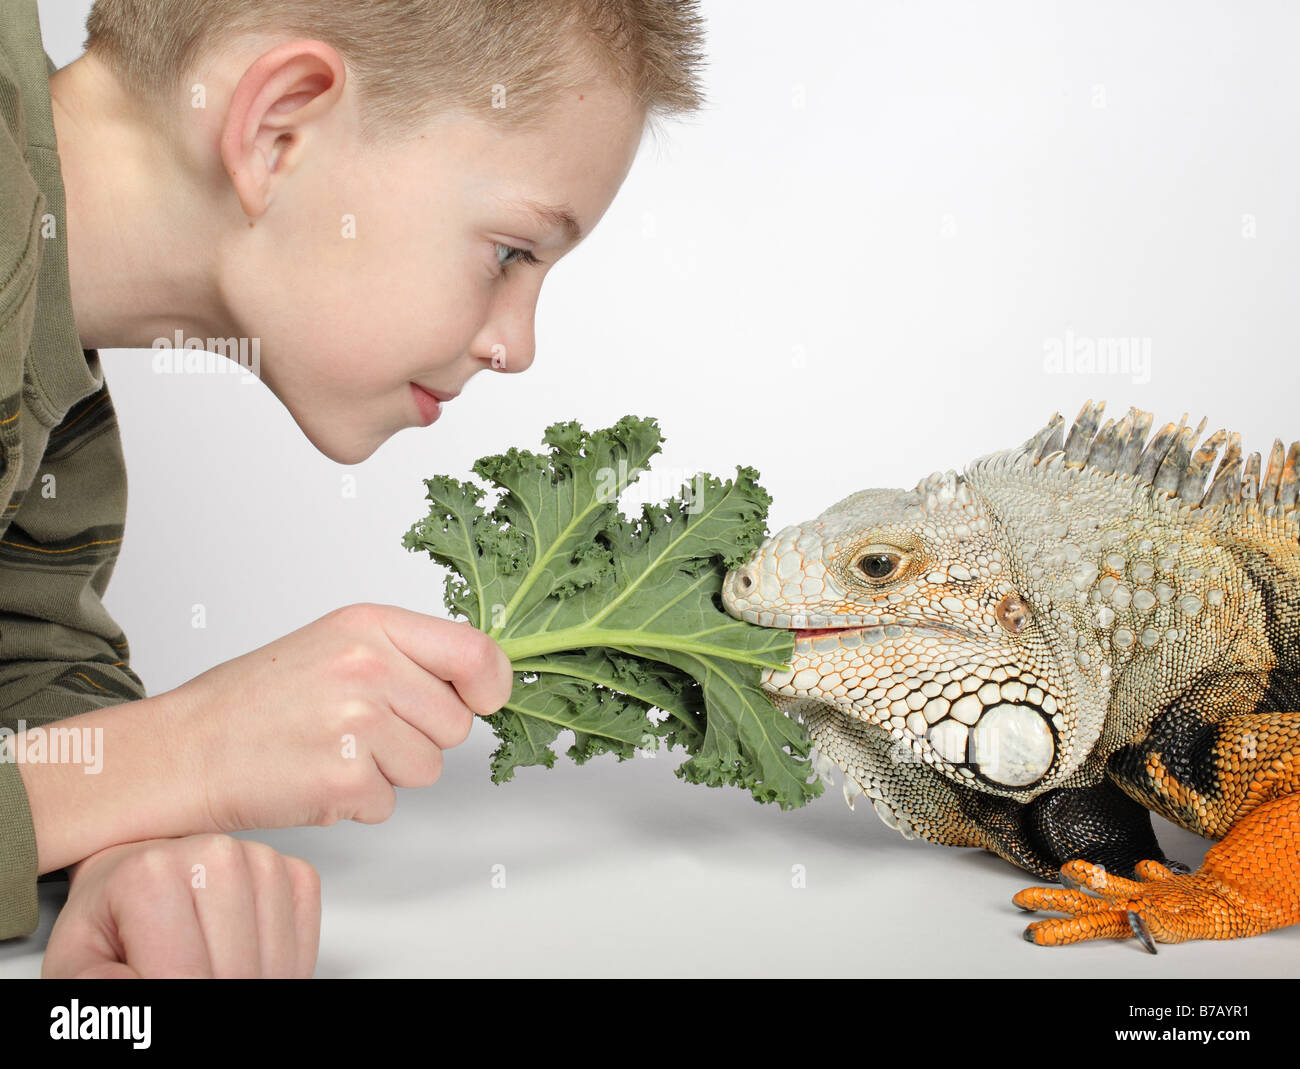 kleiner Junge Fütterung grünes Blatt zu großen Hunger pet Eidechse Stockfoto